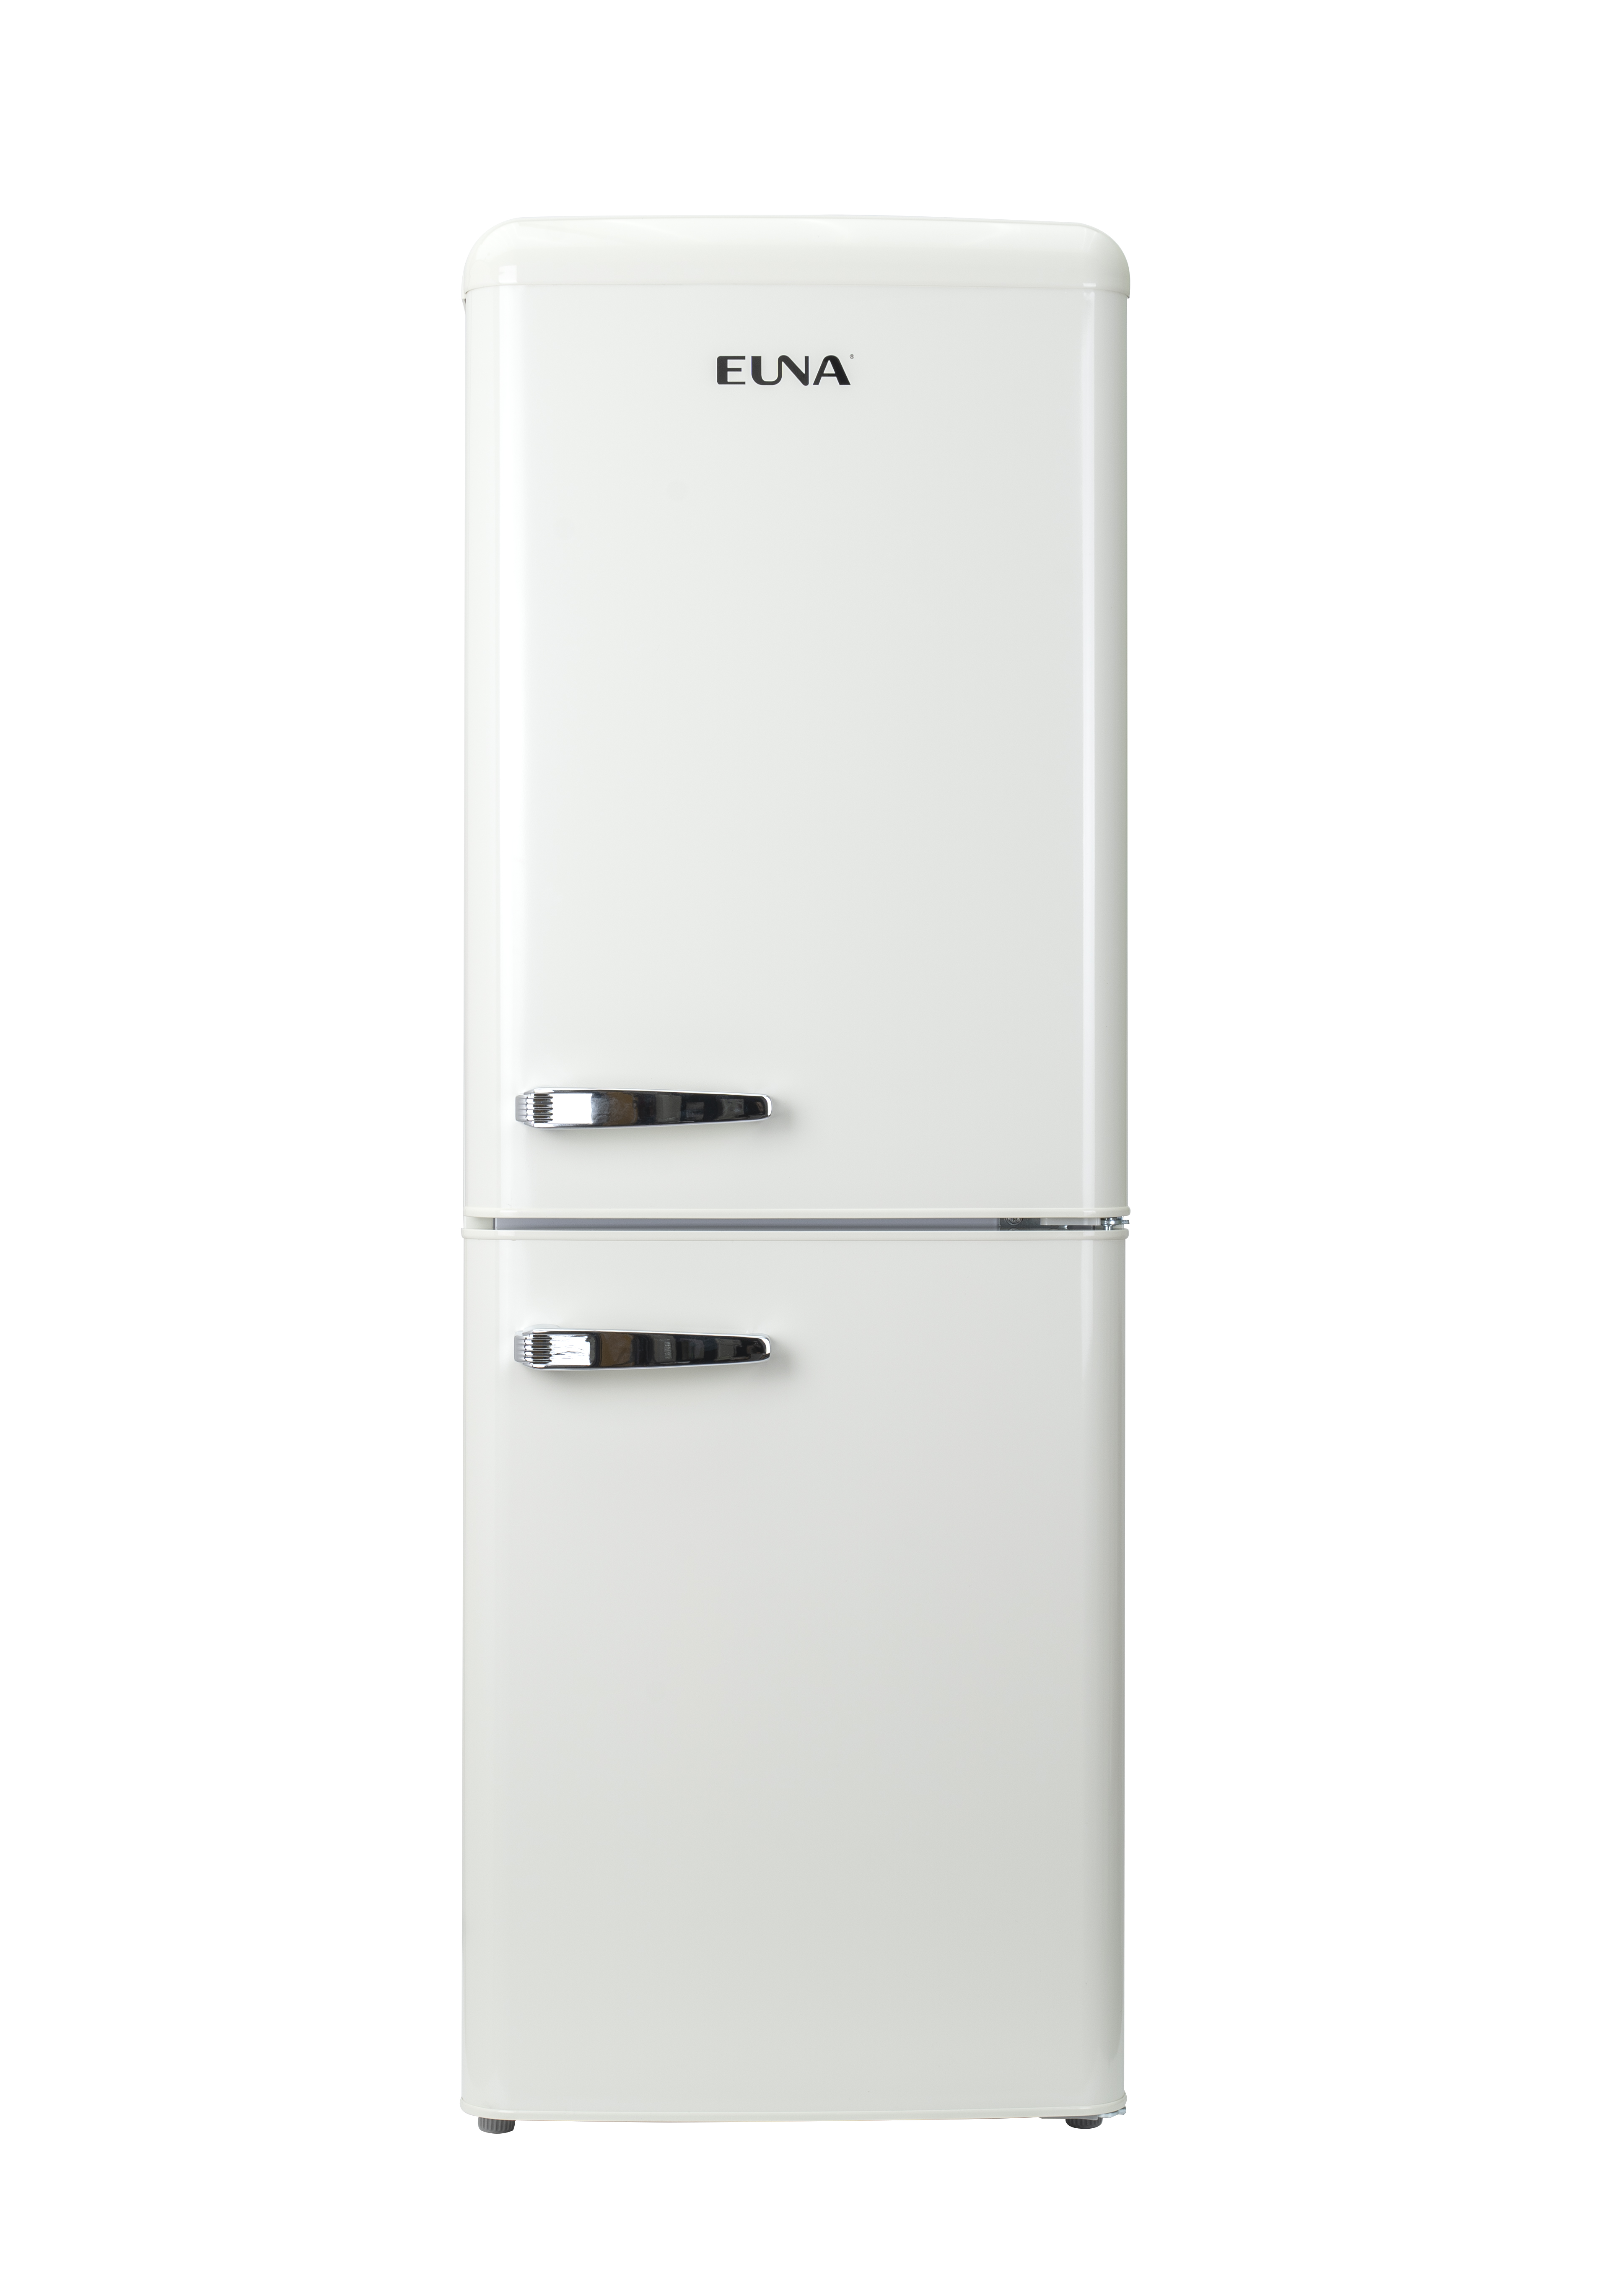 上样补贴产品✨  YNBX001 EUNA优诺复古冰箱 风冷无霜 BCD-171WR